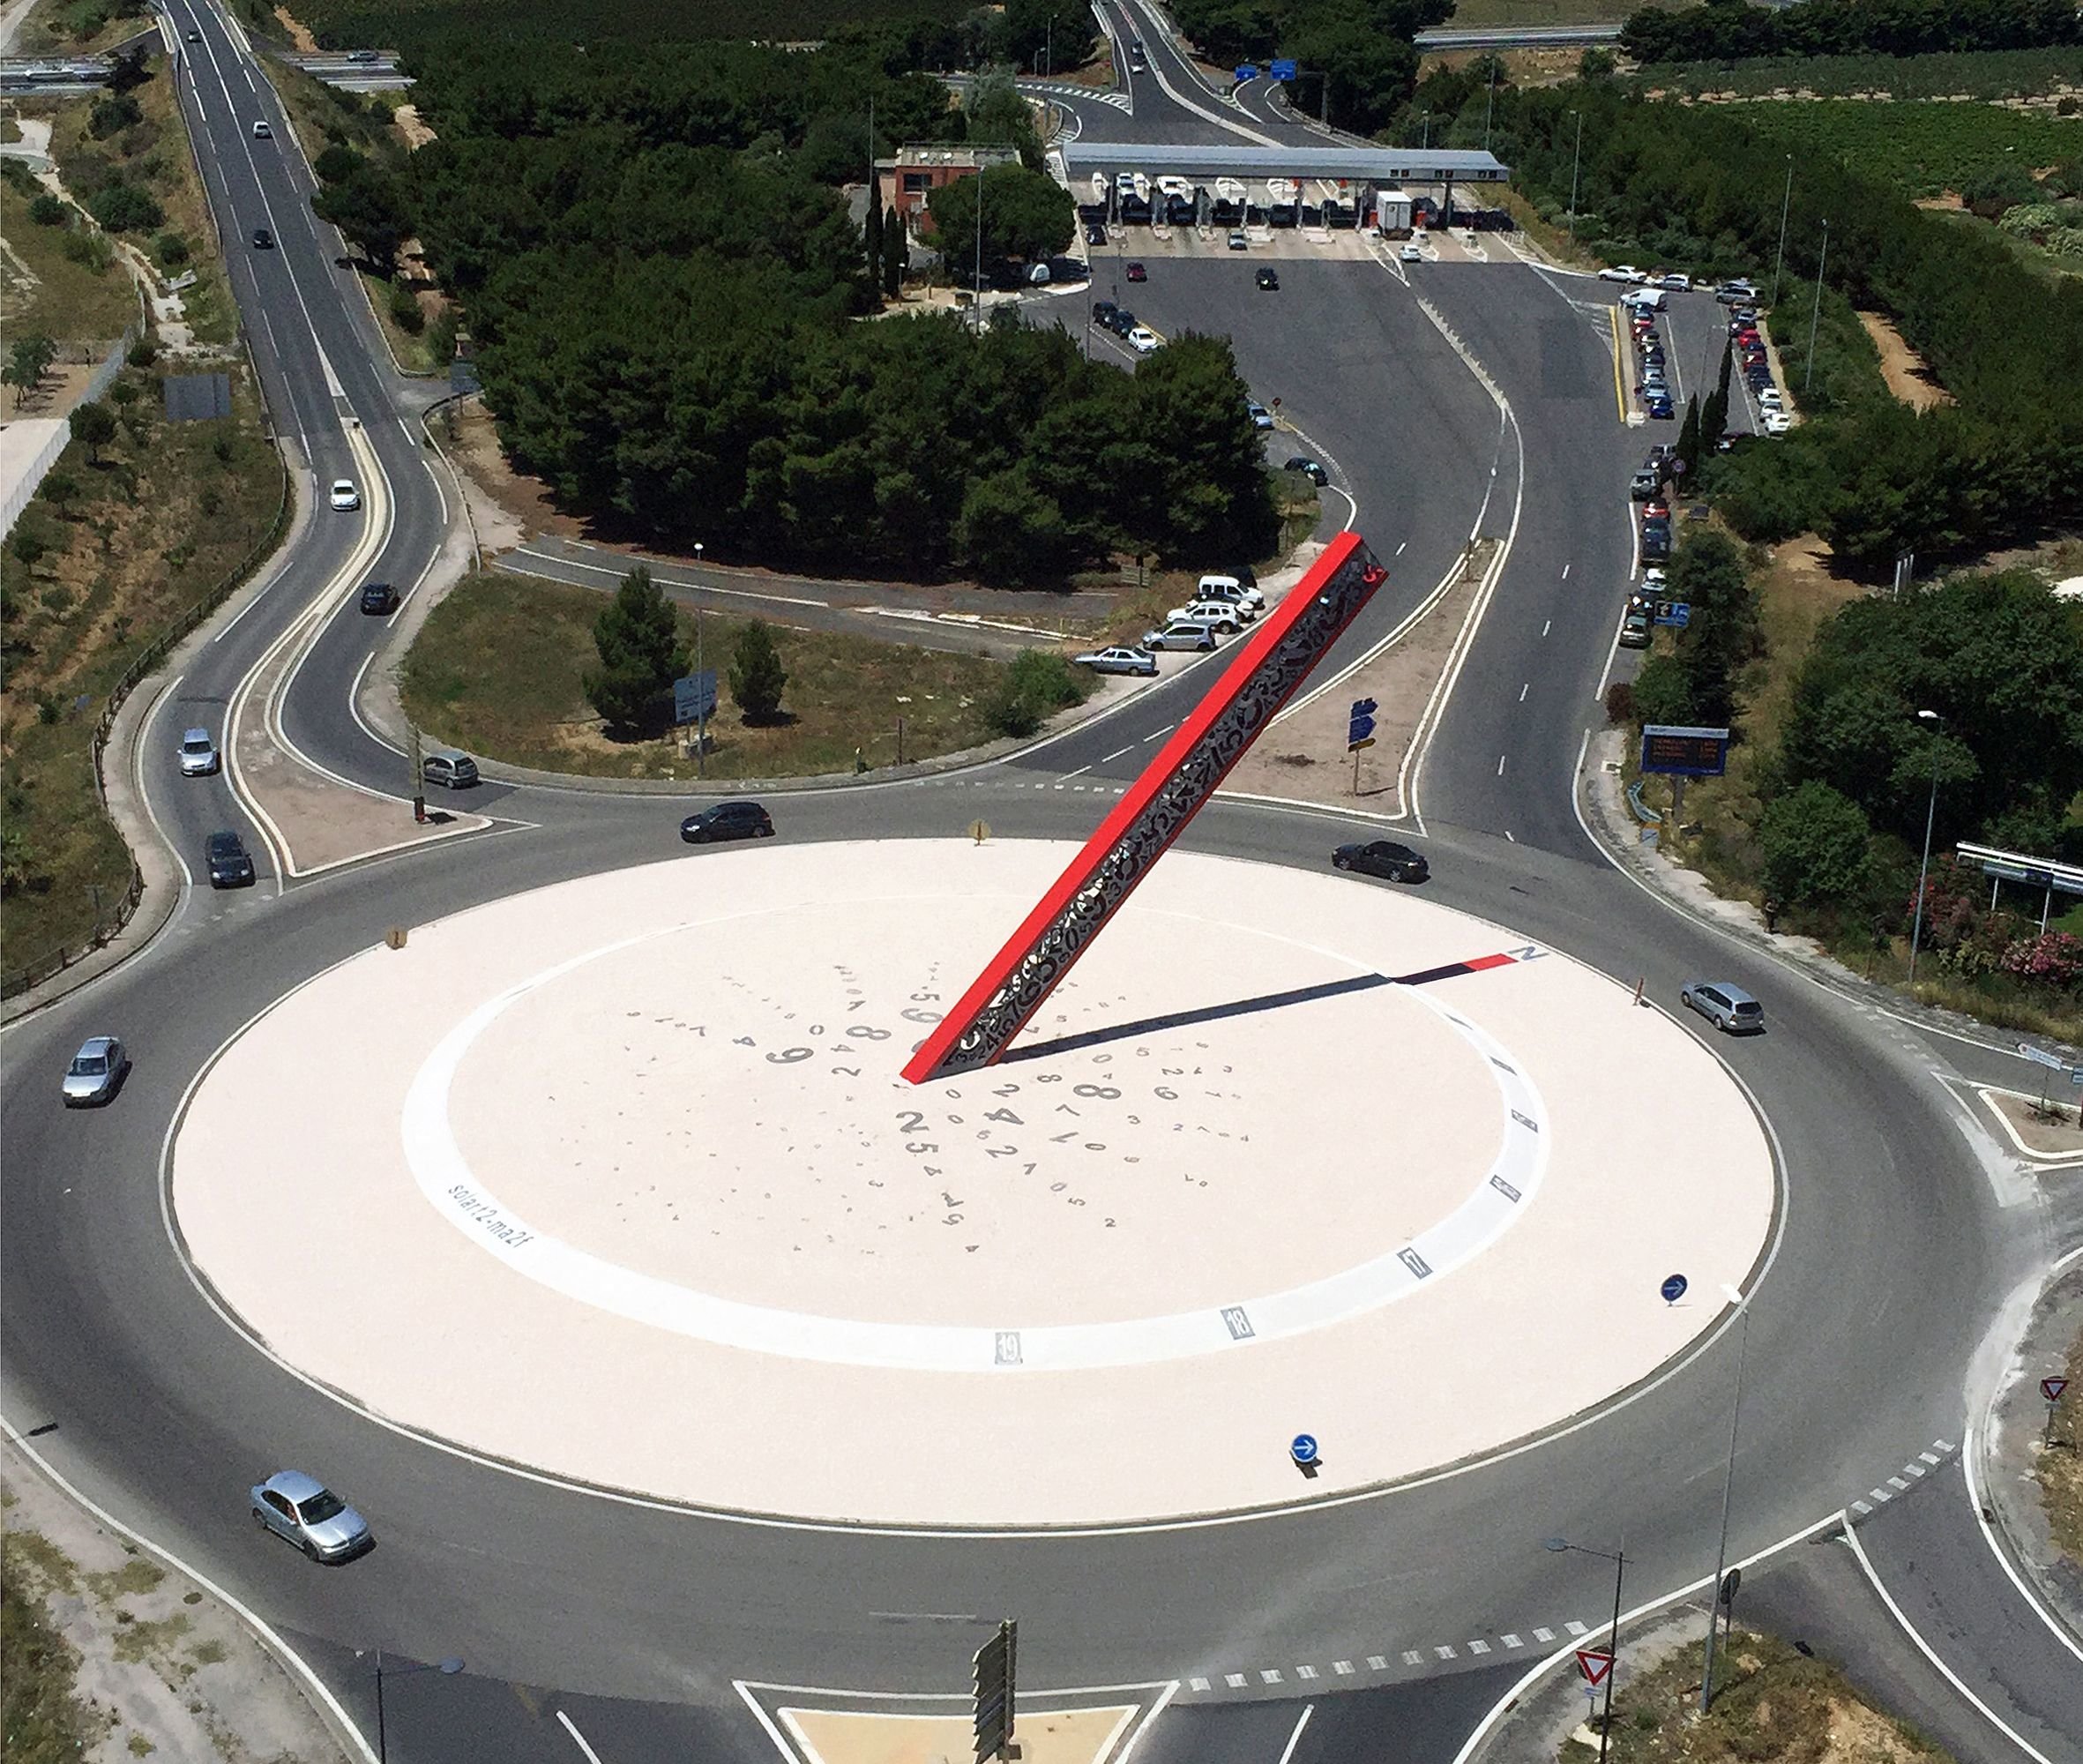 L'œuvre « Solart2 » a été installée sur un rond point de l'entrée nord de Perpignan en 2014 (ci-dessus). Vandalisée cinq ans plus tard par les Gilets jaunes puis démontée, elle ne sera pas réinstallée. MA2F